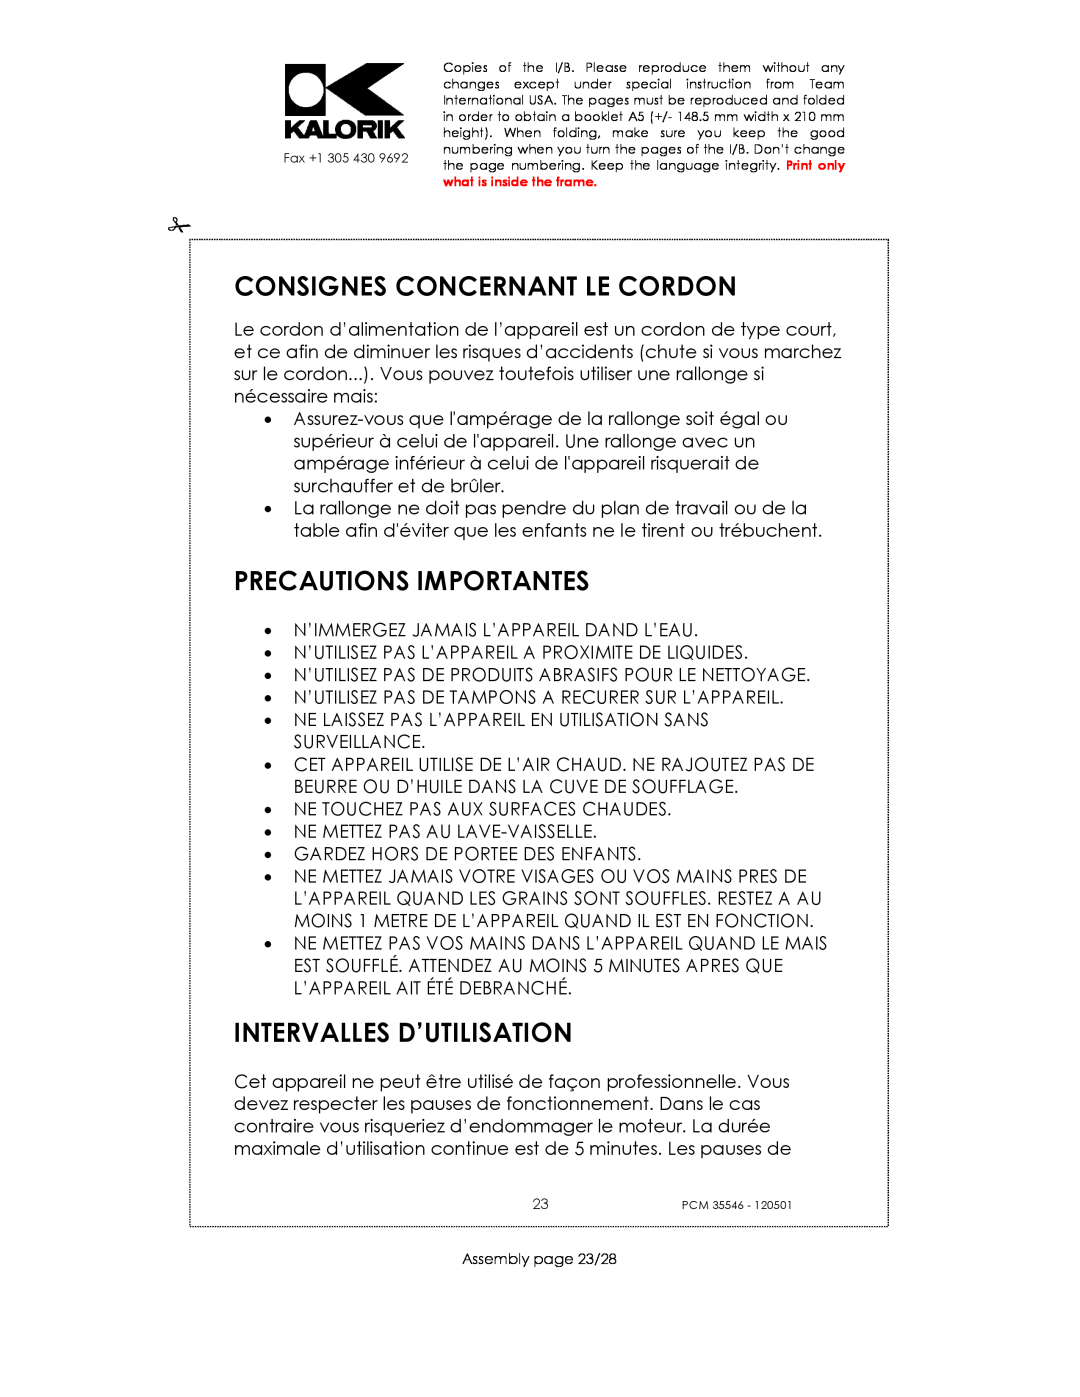 Kalorik PCM 35546 manual Consignes Concernant Le Cordon, Precautions Importantes, Intervalles D’Utilisation 